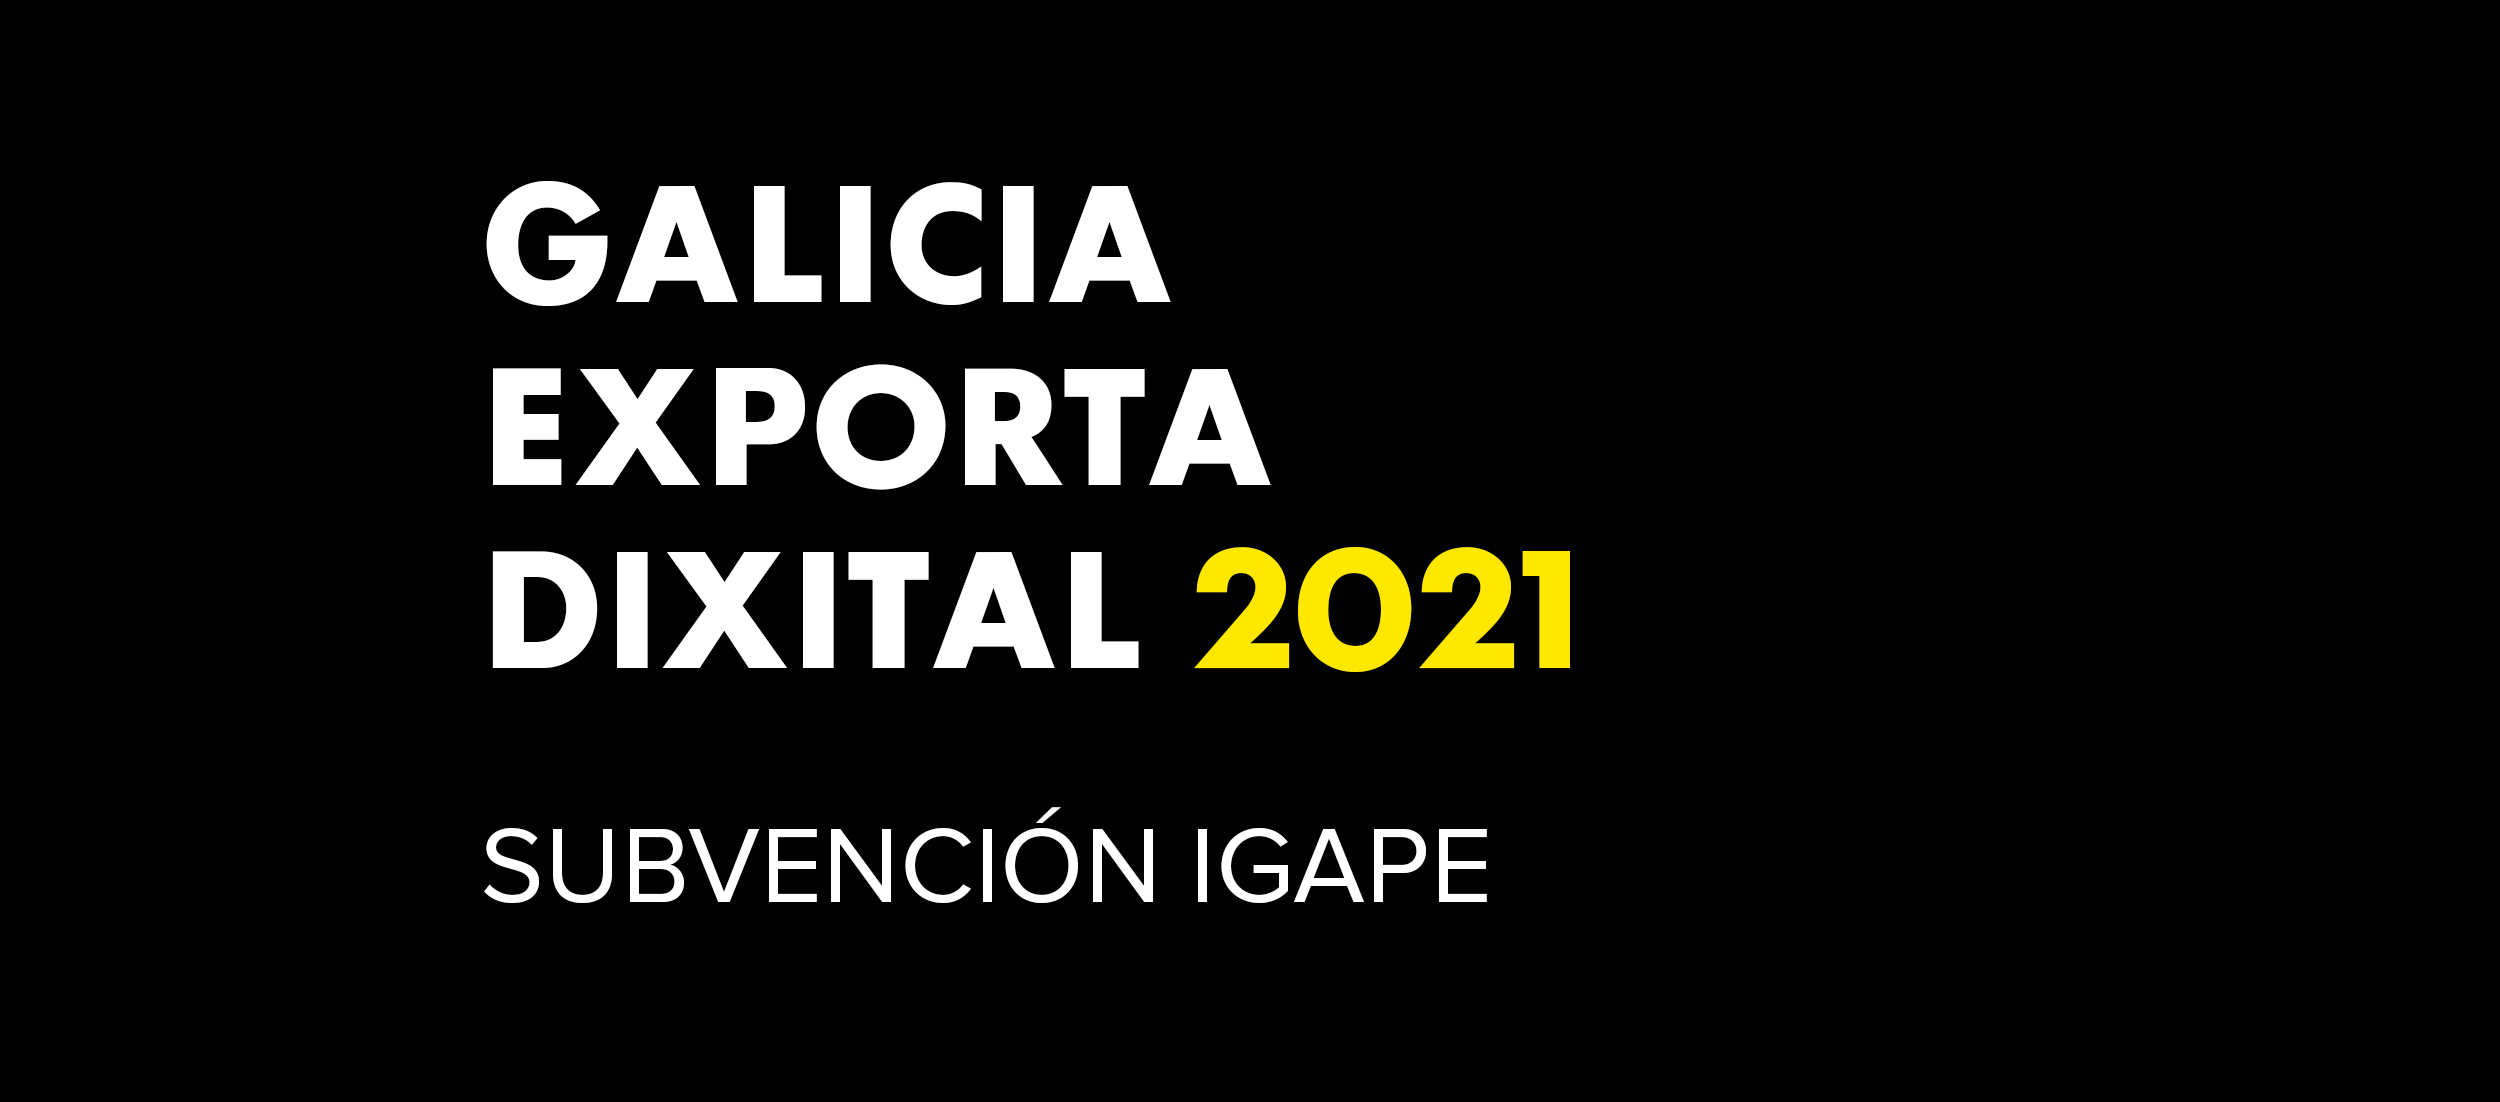 Galicia Exporta Dixital 2021 Ayudas | ICON